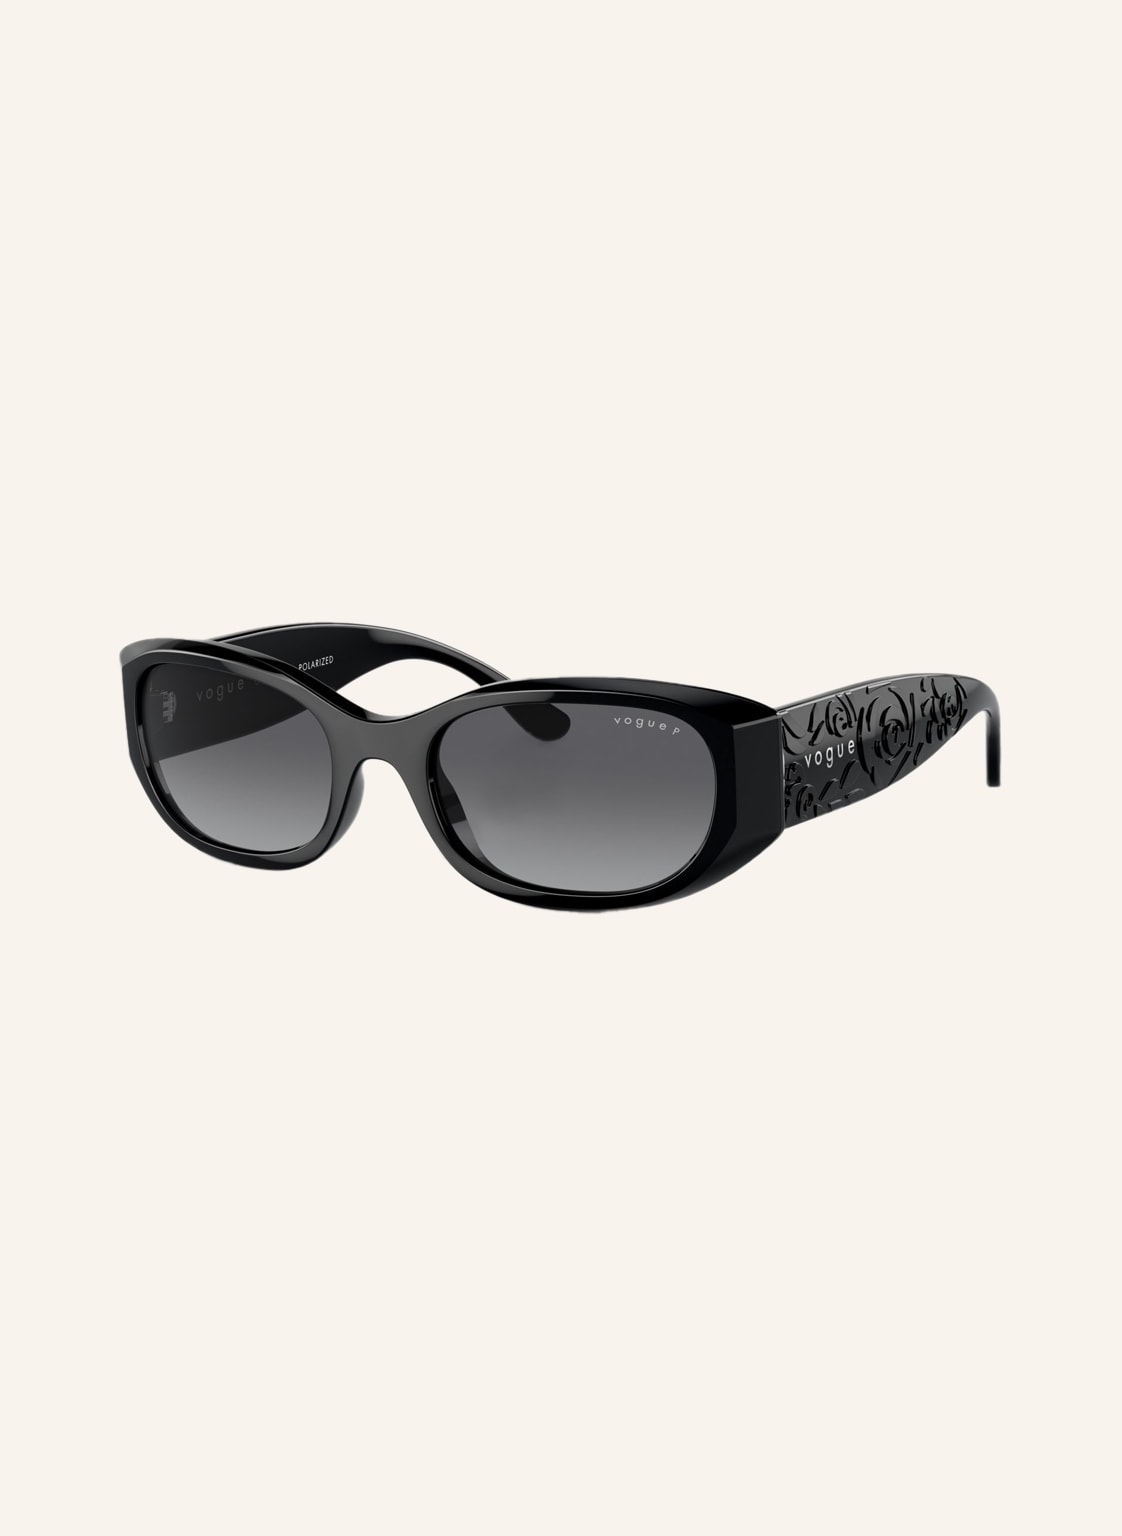 Vogue Sonnenbrille vo5525s schwarz von Vogue